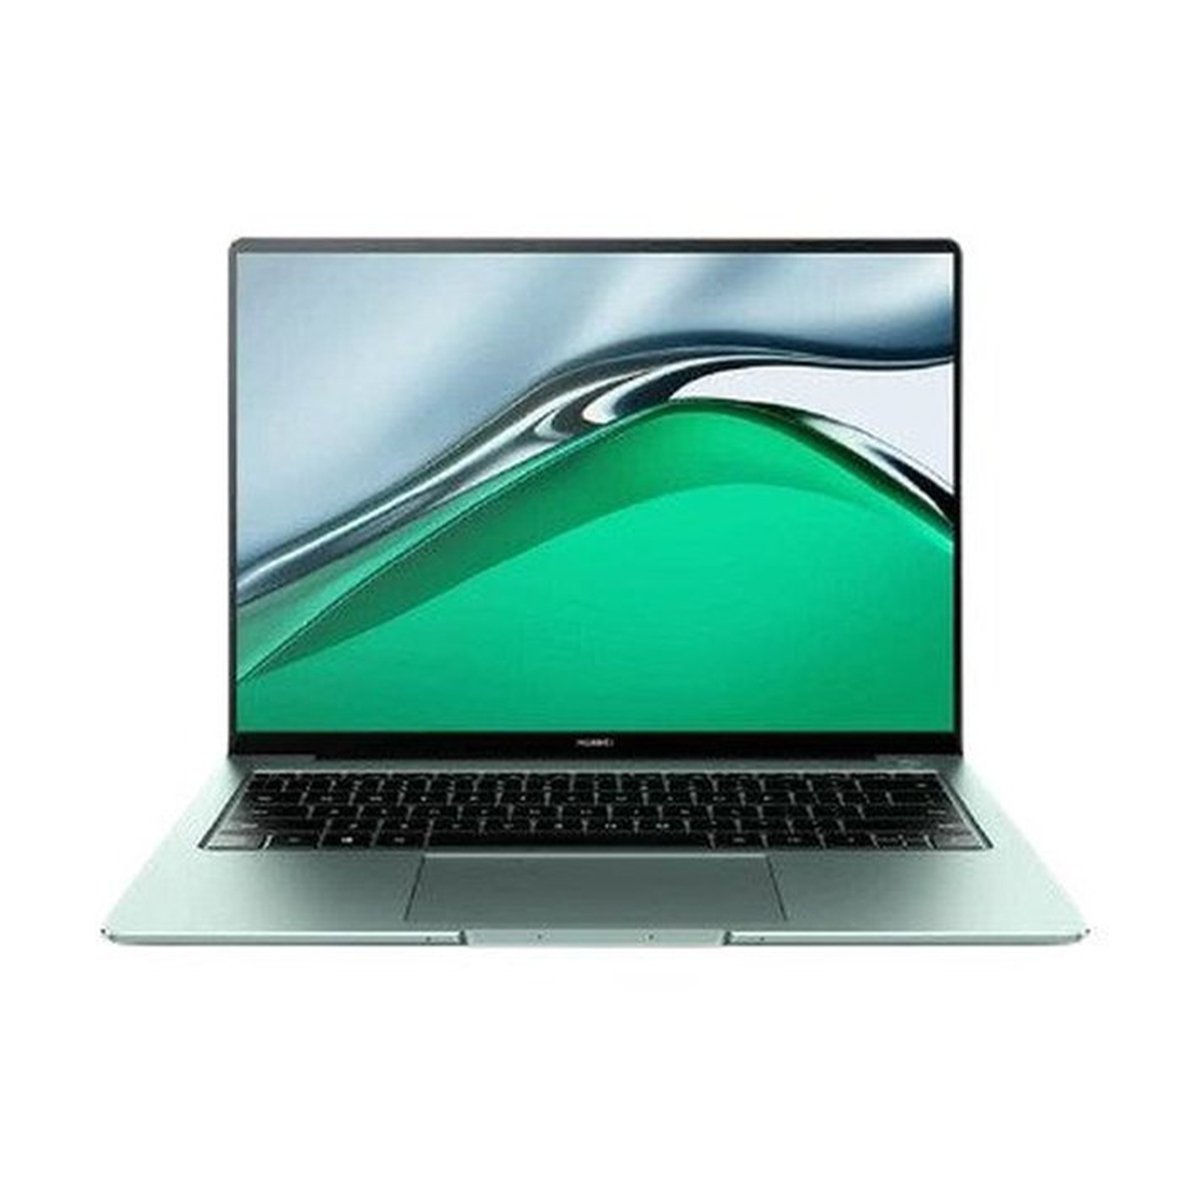 Huawei MateBook 14S (2021) Intel Core i7,16GB RAM,512GB SSD,Intel Iris Graphics,14.2" Display,Window 10,Spruce Green,English/Arabic Keyboard